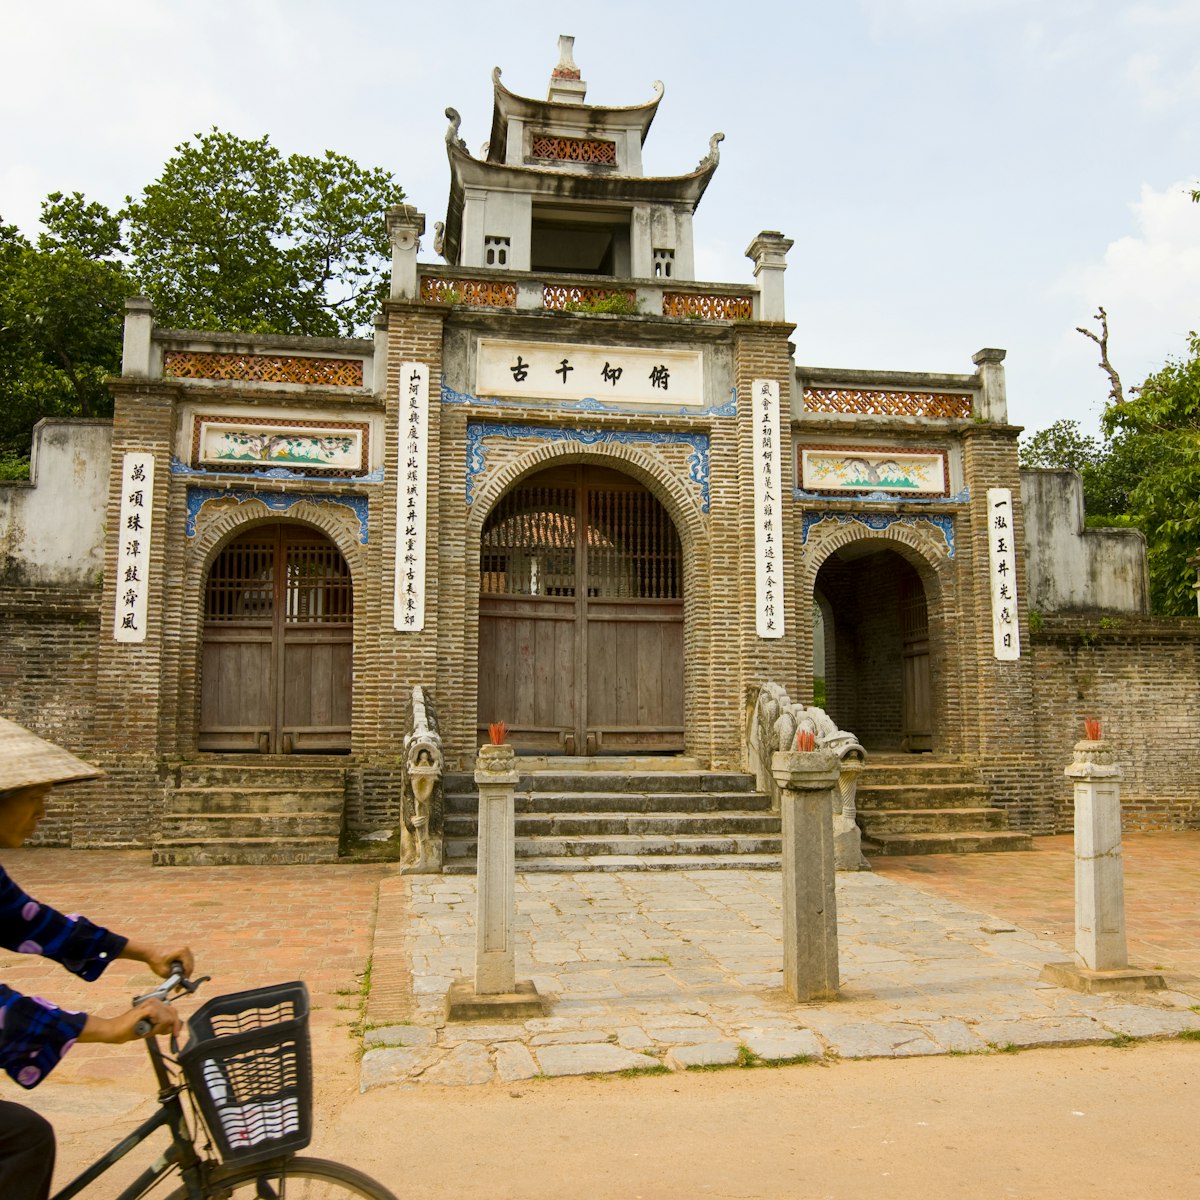 Thuc Dynasty temple, 5 August 2011, in Co Loa Citadel, near Hanoi, Vietnam.